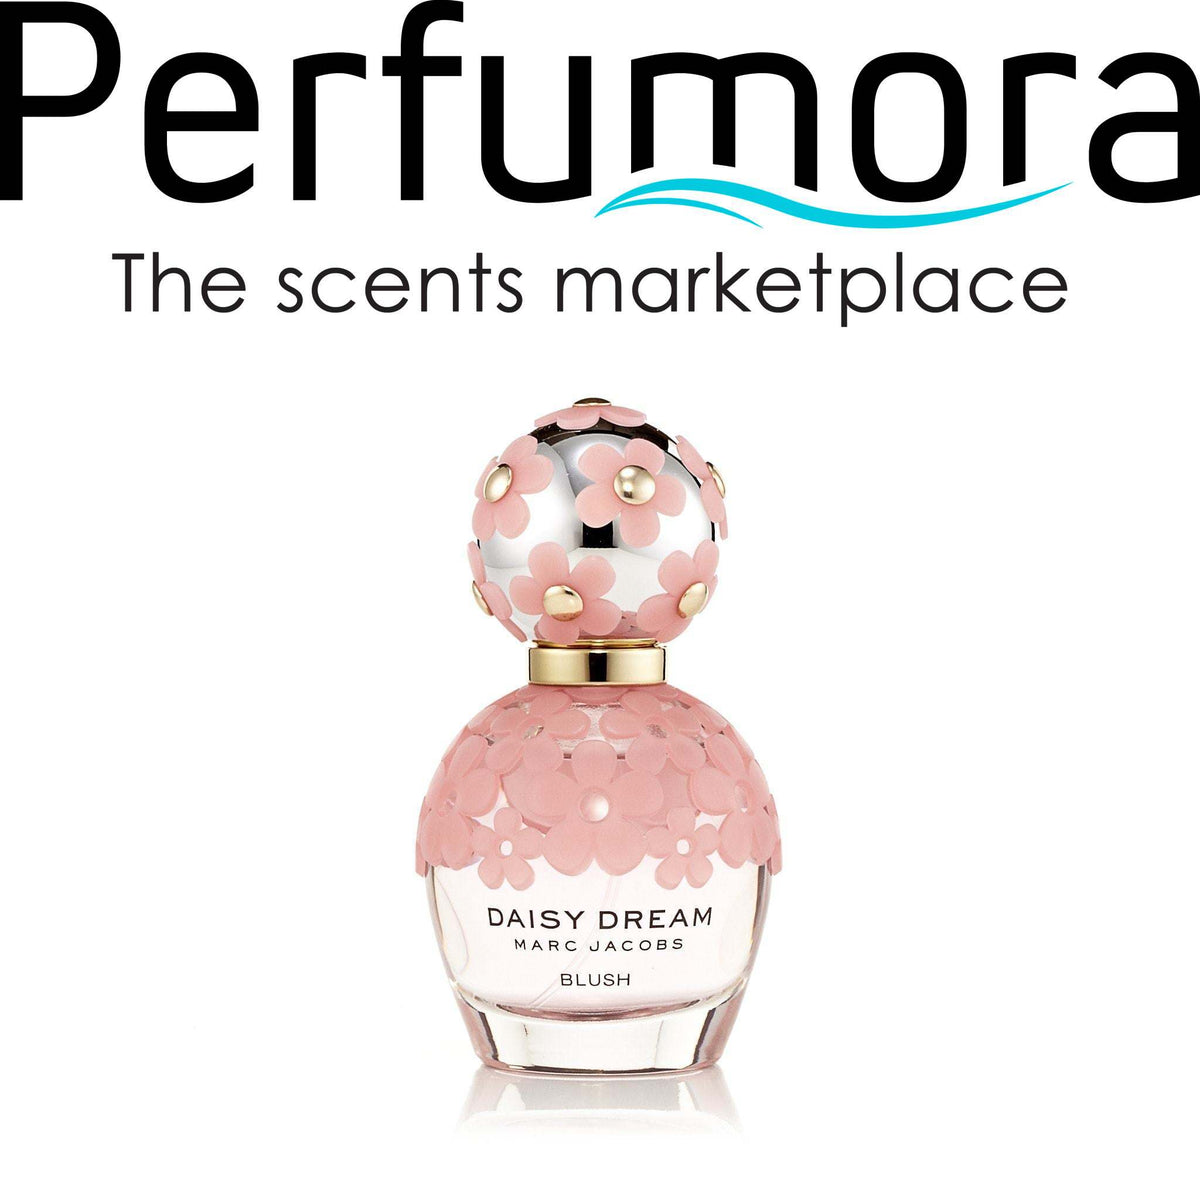 Daisy Dream Blush Eau de Toilette Spray for Women by Marc Jacobs 1.7 oz.